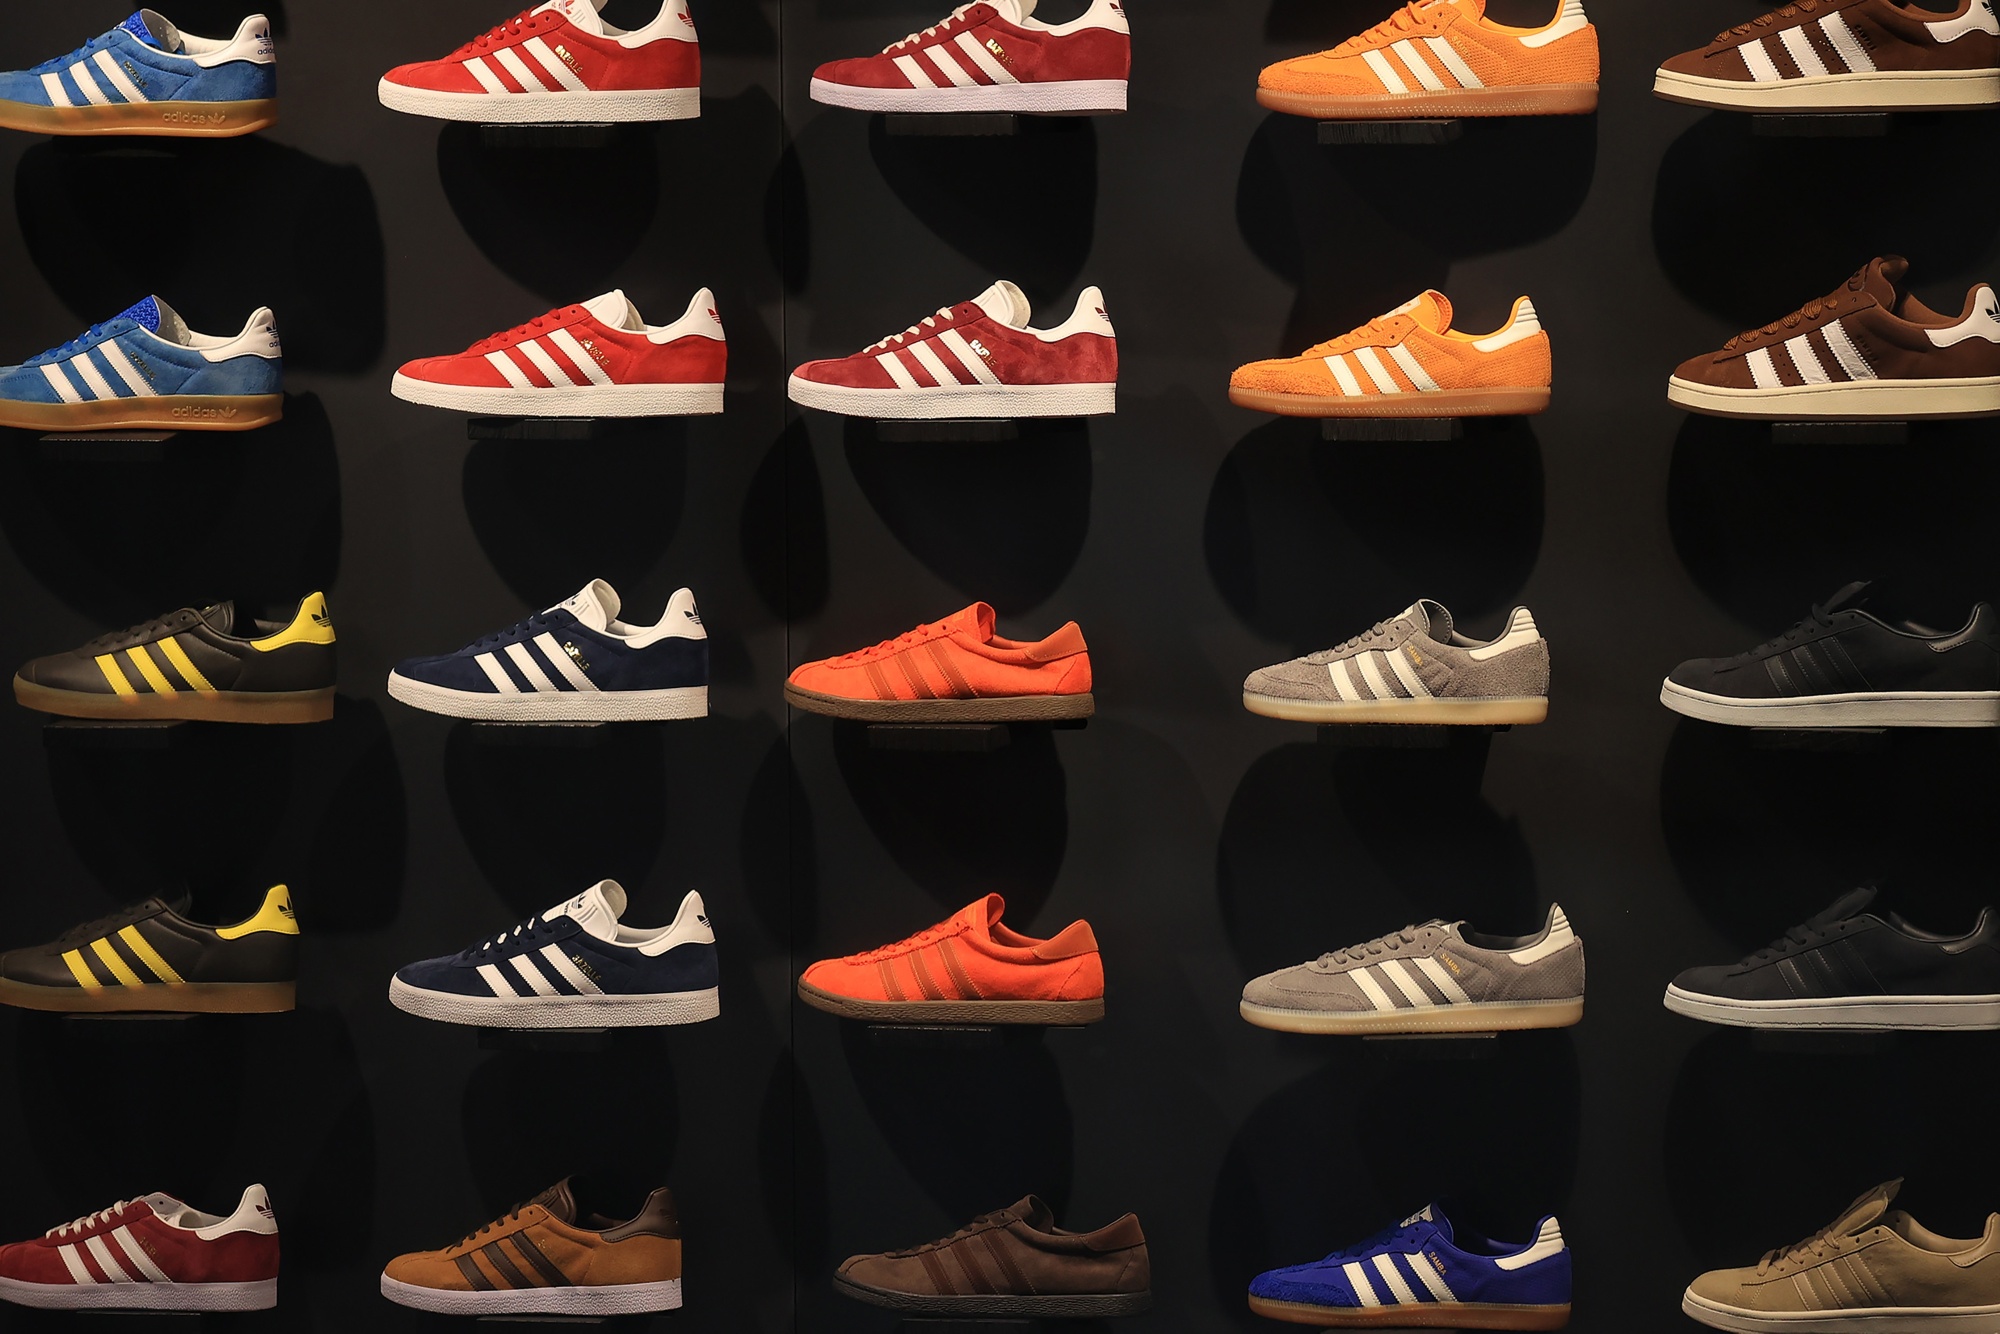 rigidez No hagas desmayarse Adidas venderá zapatillas sobrantes de Yeezy, donará recaudación - Bloomberg